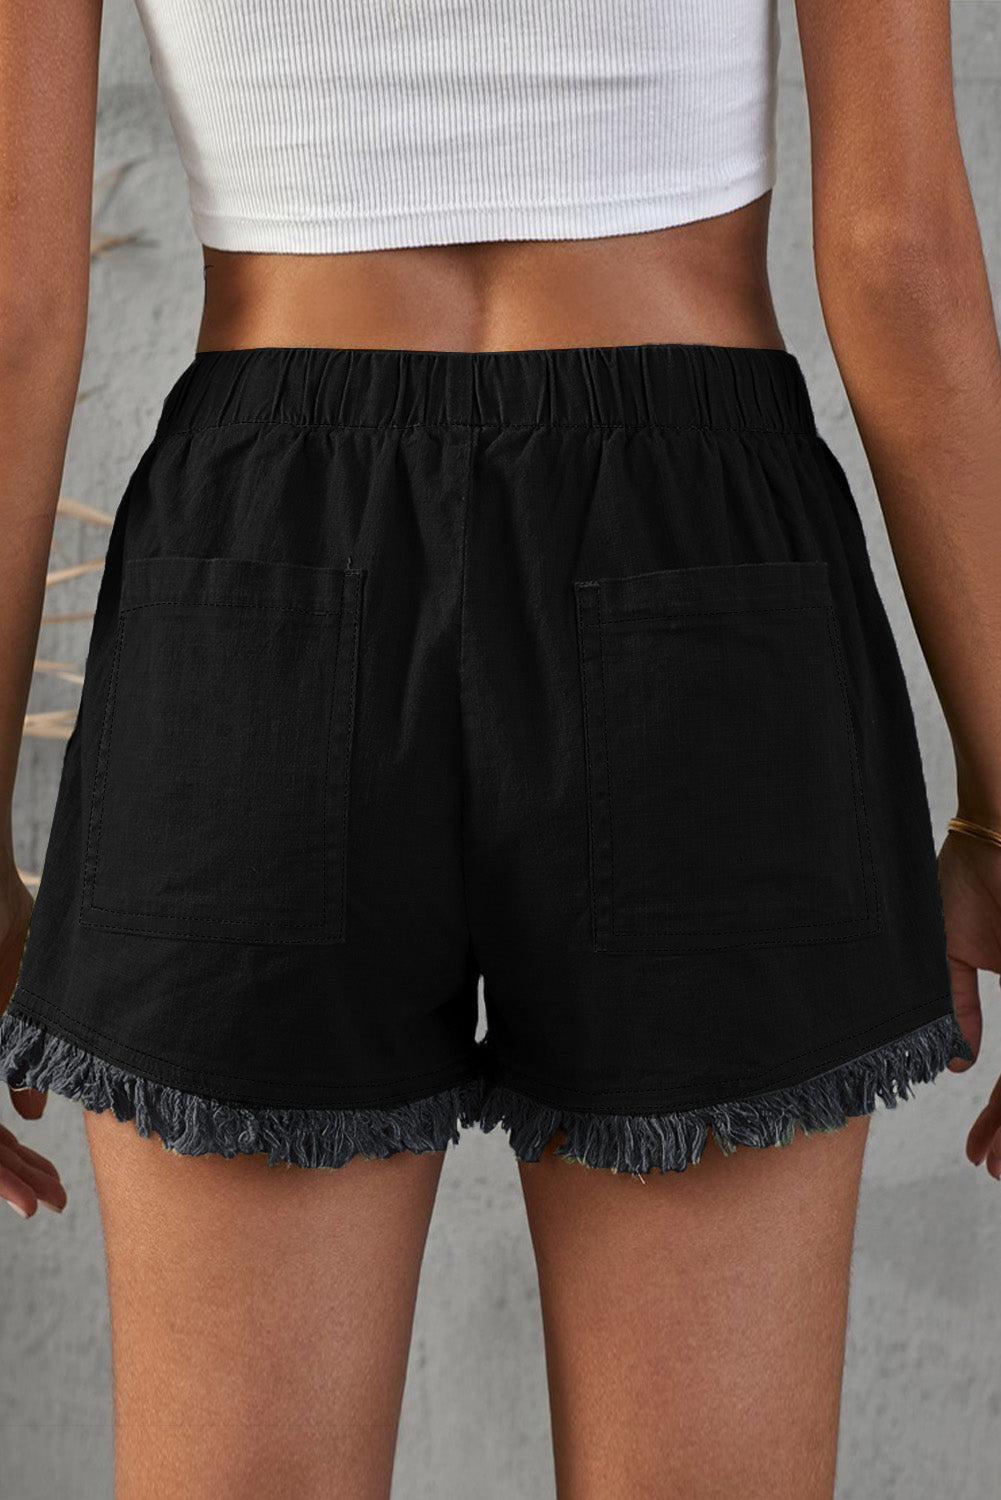 Pocketed Frayed Denim Shorts - DromedarShop.com Online Boutique